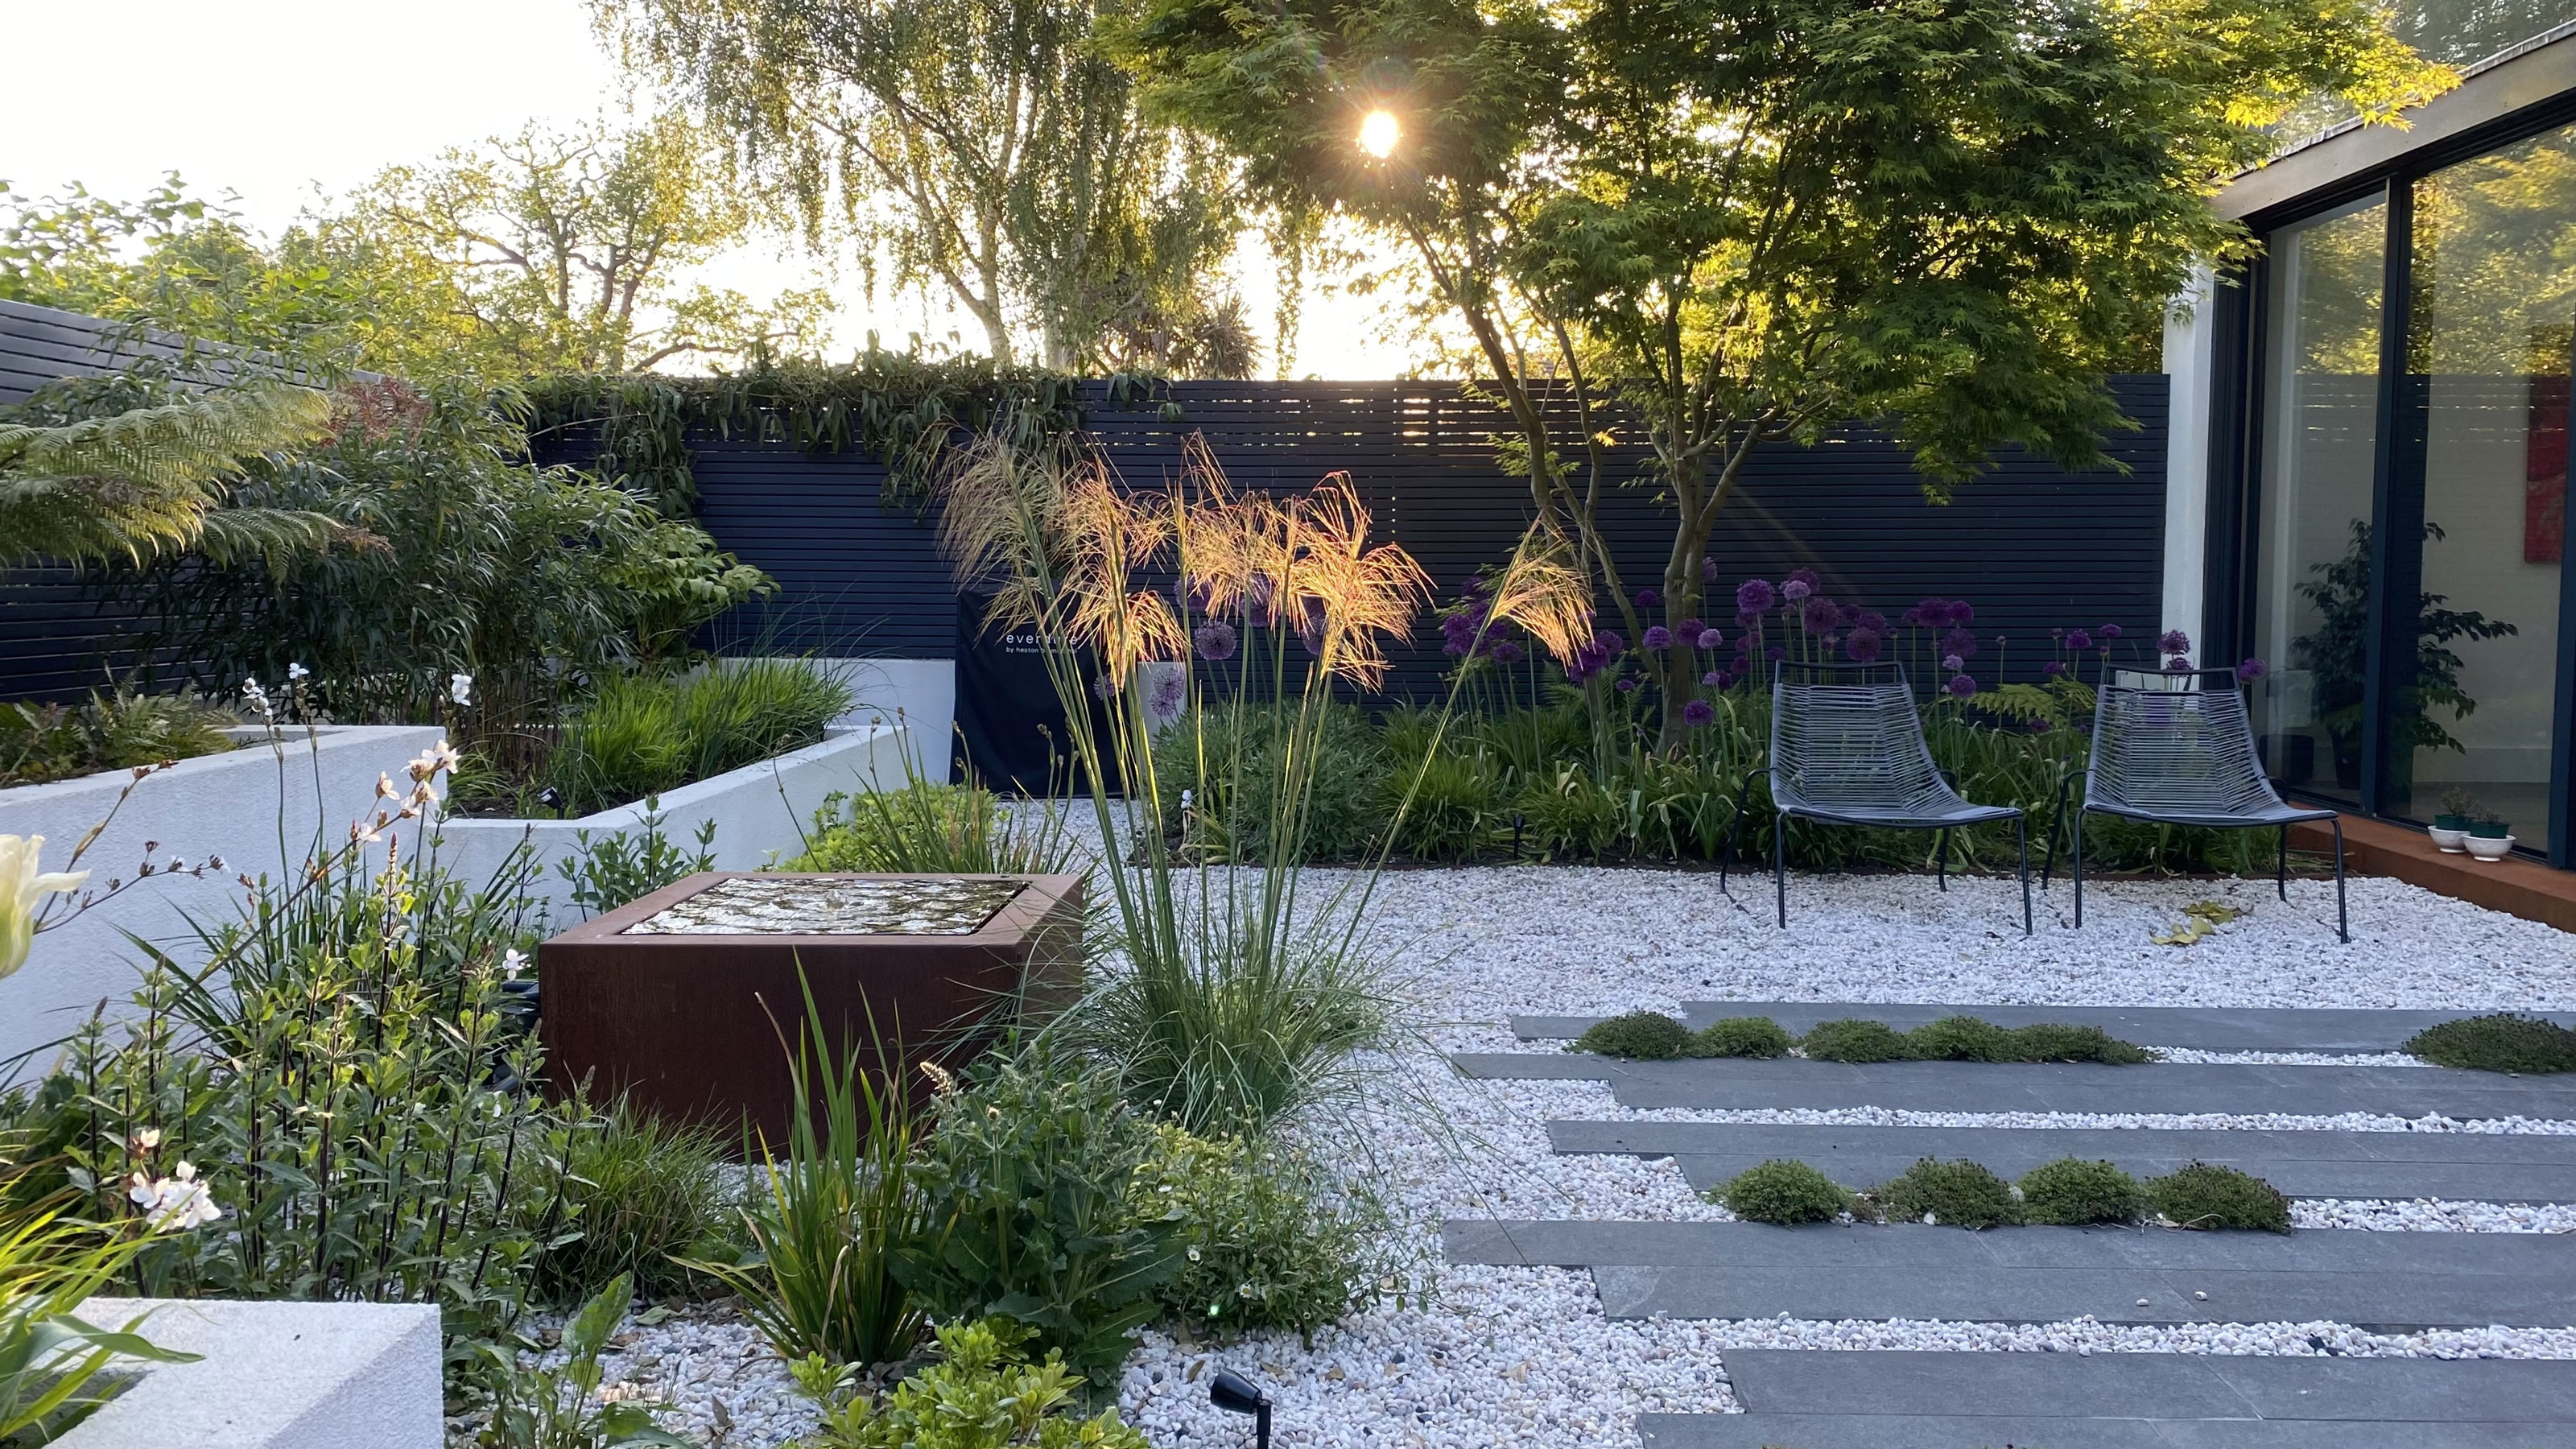 Garden Design Ideas With Pebbles | Unique garden decor, Pebble garden,  Front yard landscaping design